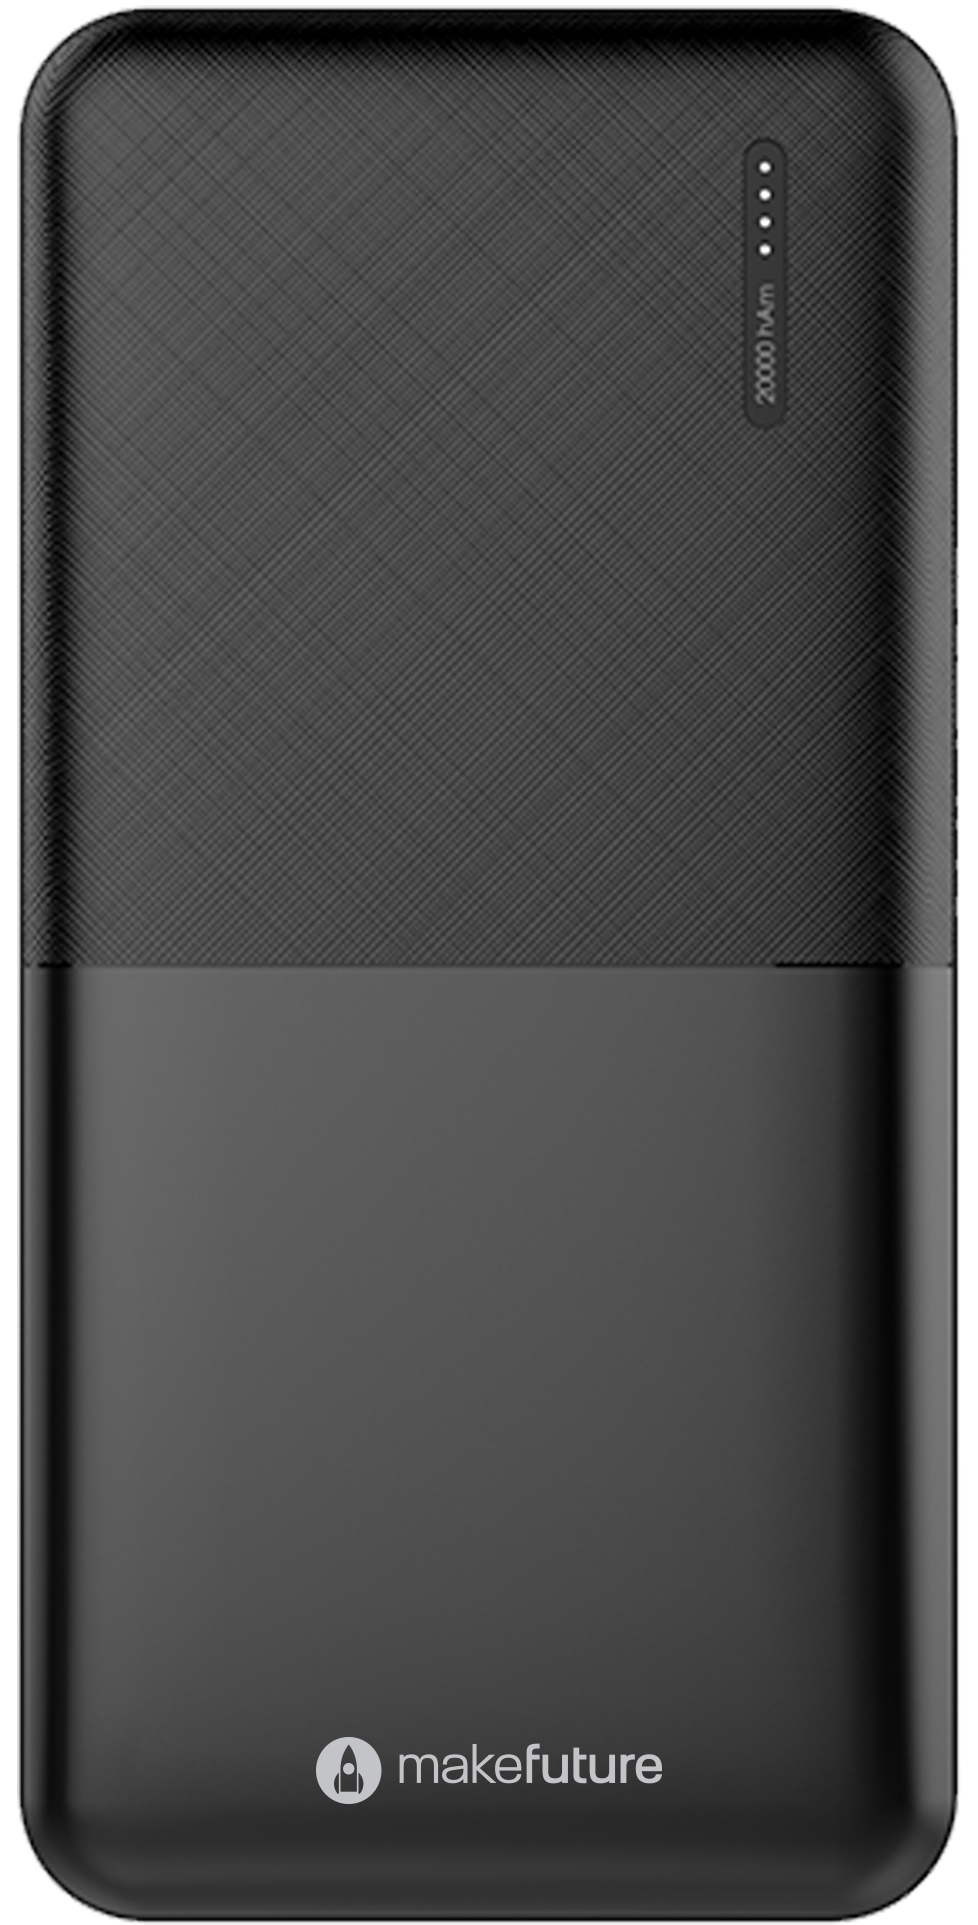 Мобильная батарея MakeFuture Power Bank 20000 mAh Black (MPB-203BK) - фото 1 - samsungshop.com.ua